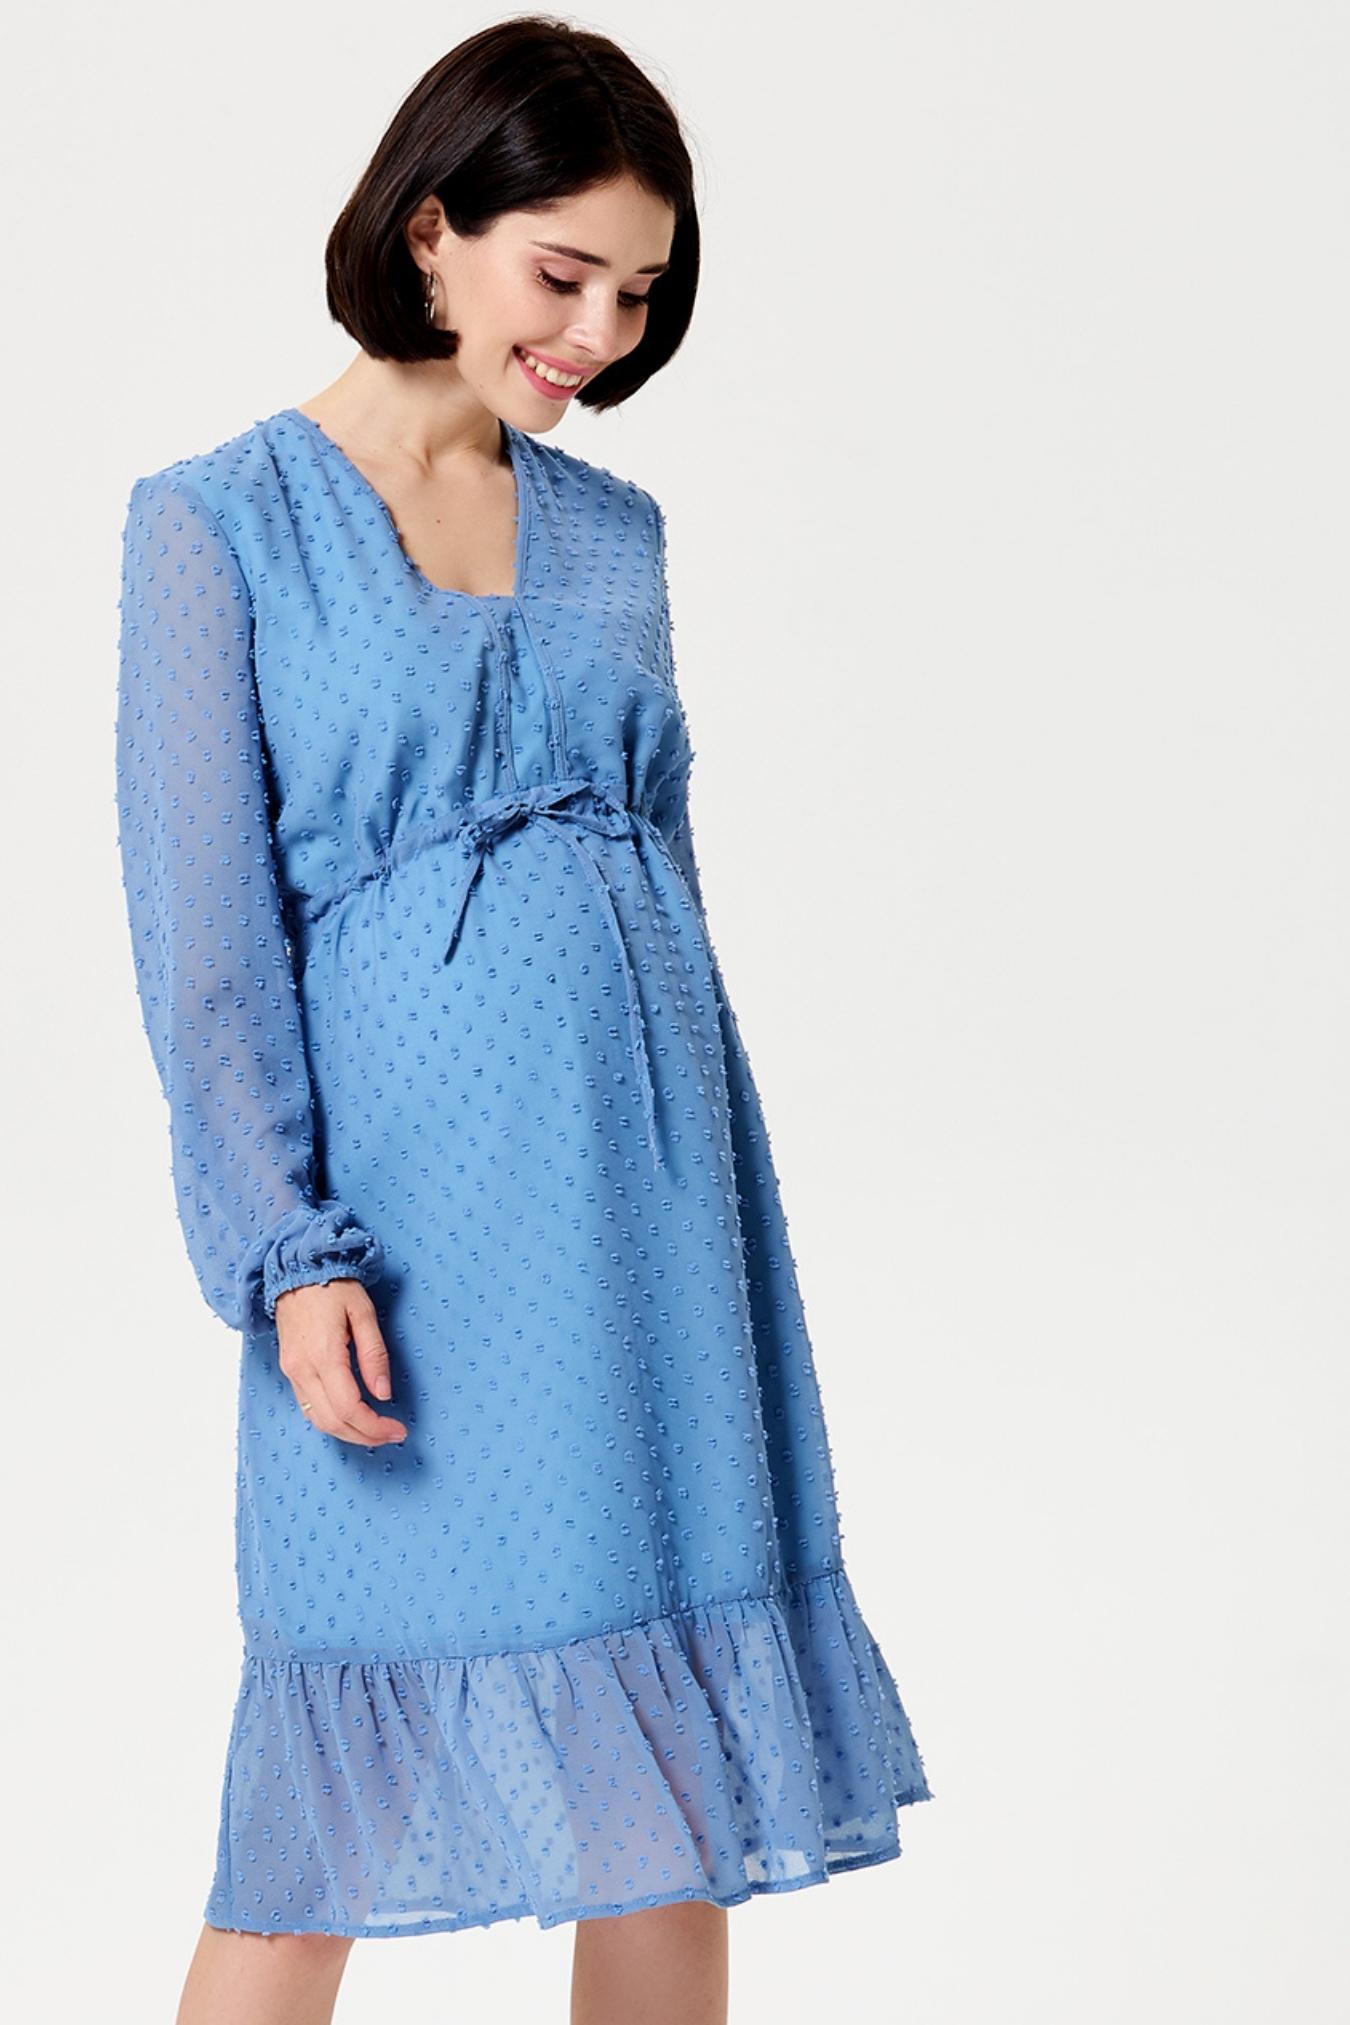 Платье для беременных нарядное женское повседневное летнее весна праздничное одежда в офис / Happy Moms